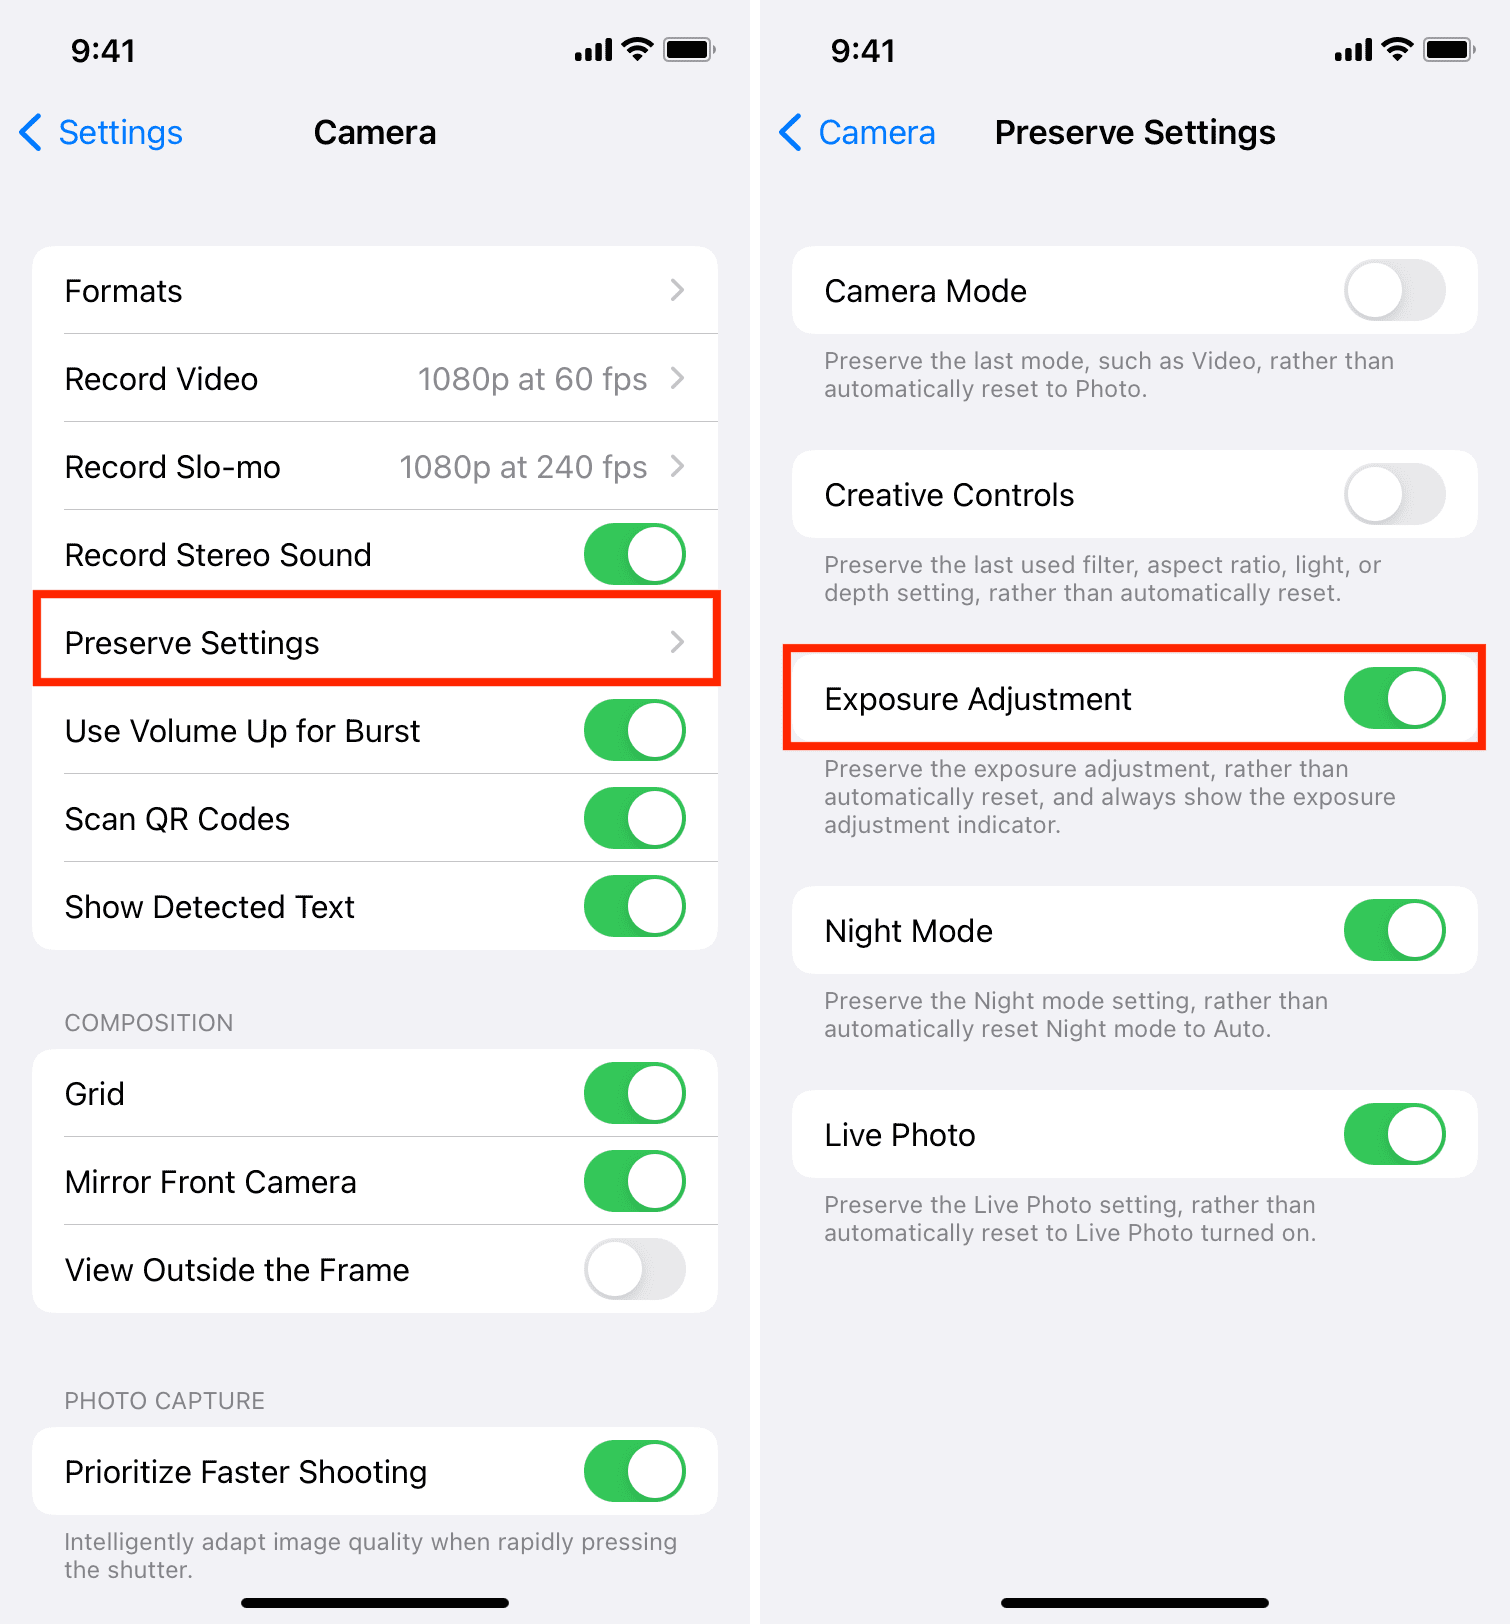 Preserve Exposure Adjustment settings on iPhone